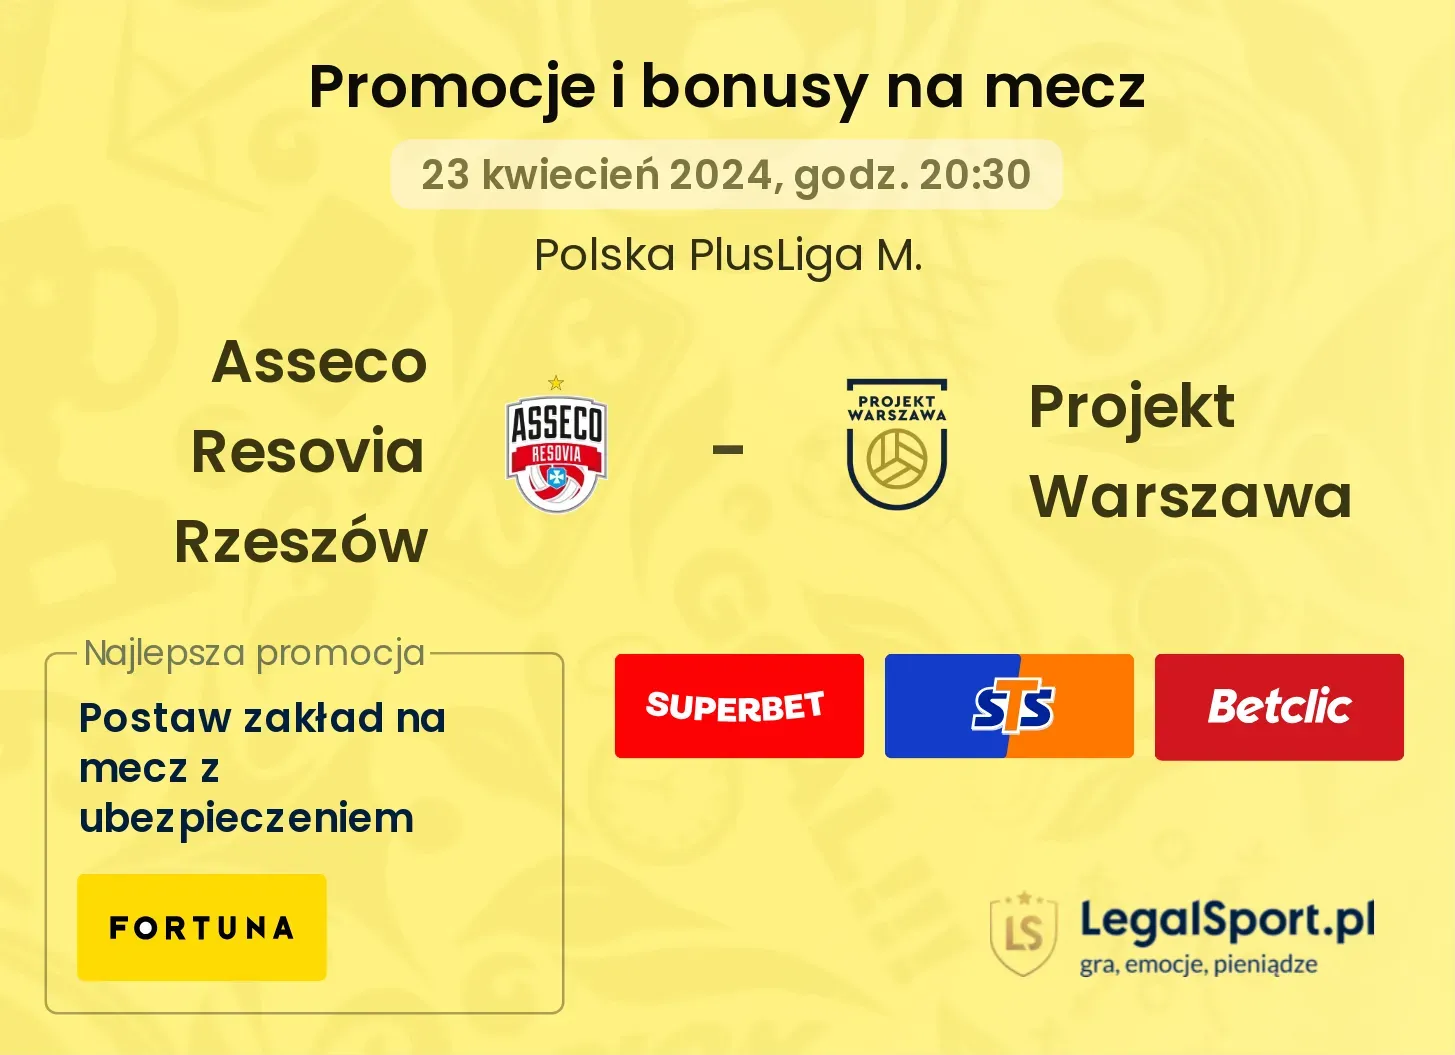 Asseco Resovia Rzeszów - Projekt Warszawa promocje bonusy na mecz